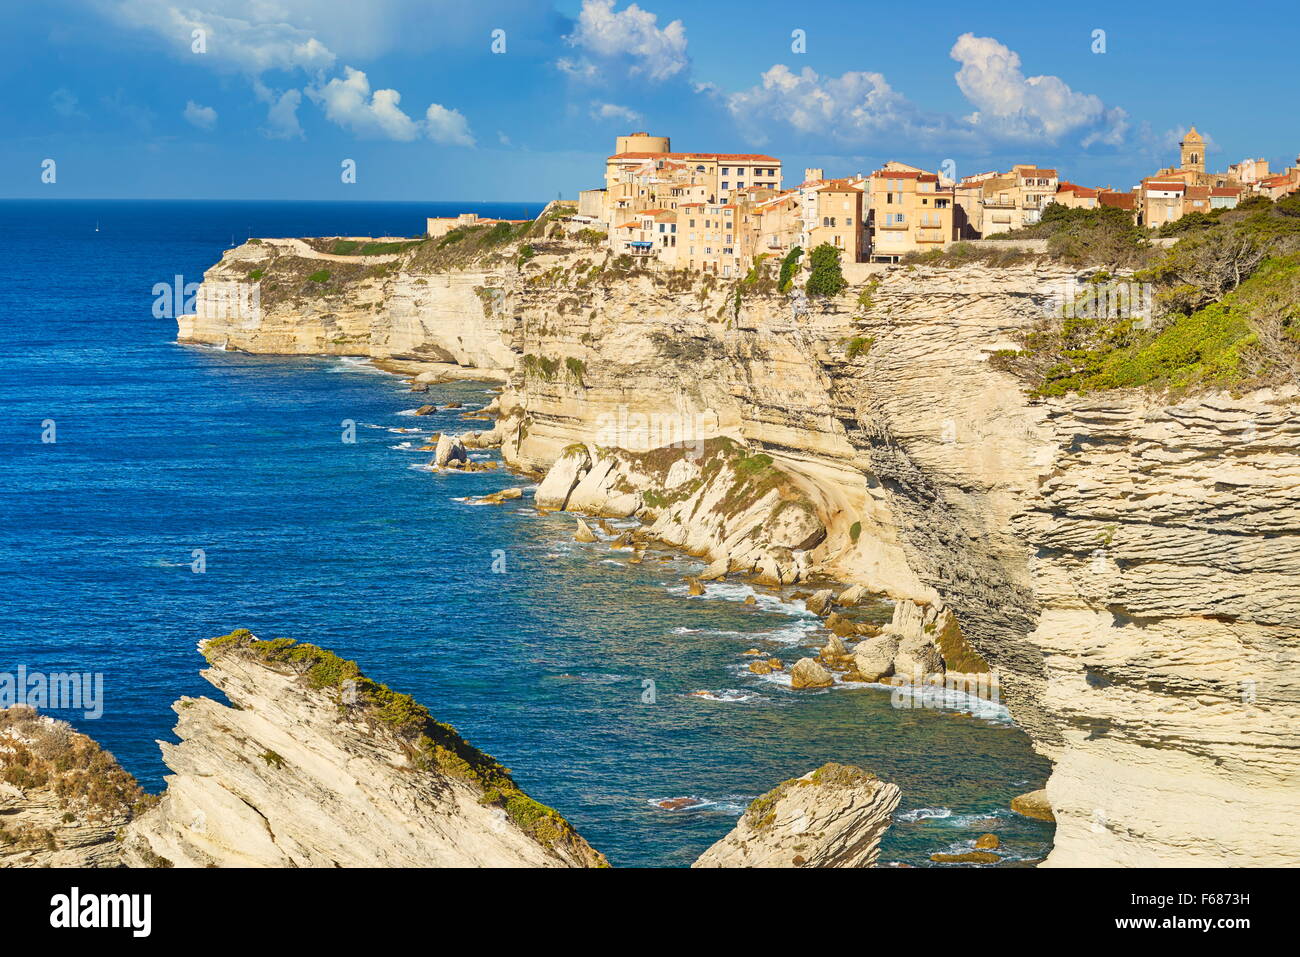 Binifacio situé sur la falaise de calcaire, Bonifacio, côte sud de la Corse, France Banque D'Images